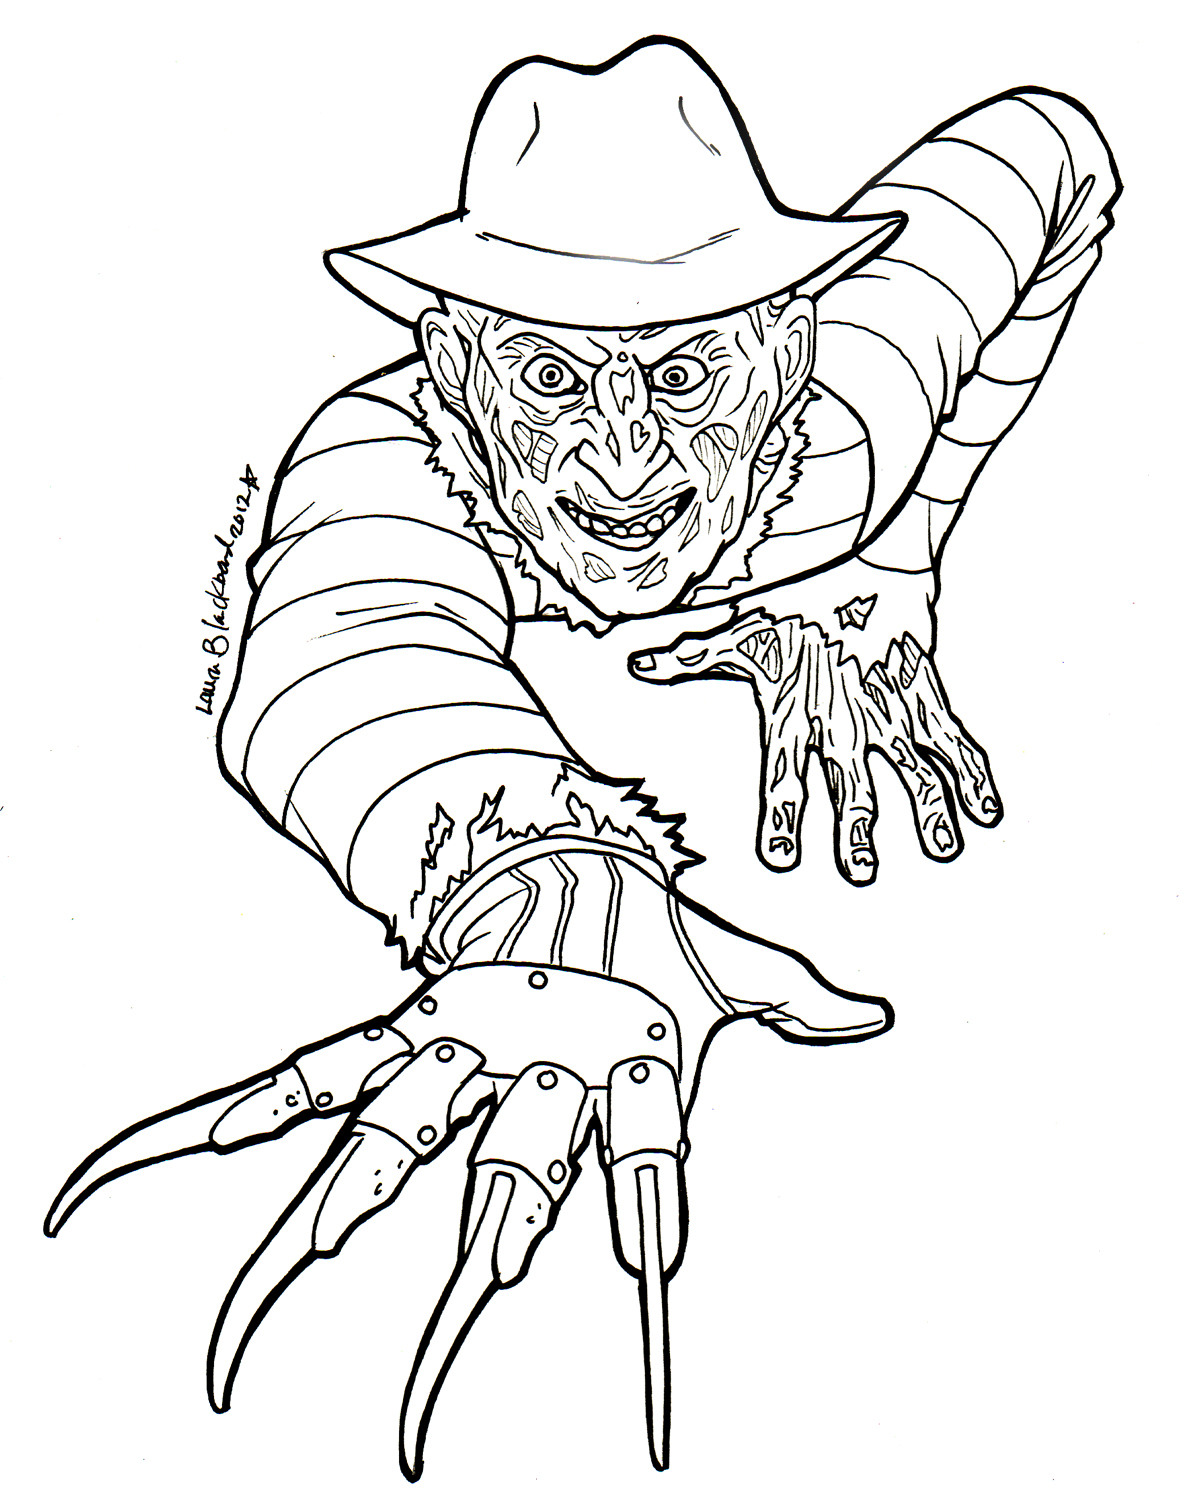 Freddy Krueger Drawing at GetDrawings | Free download